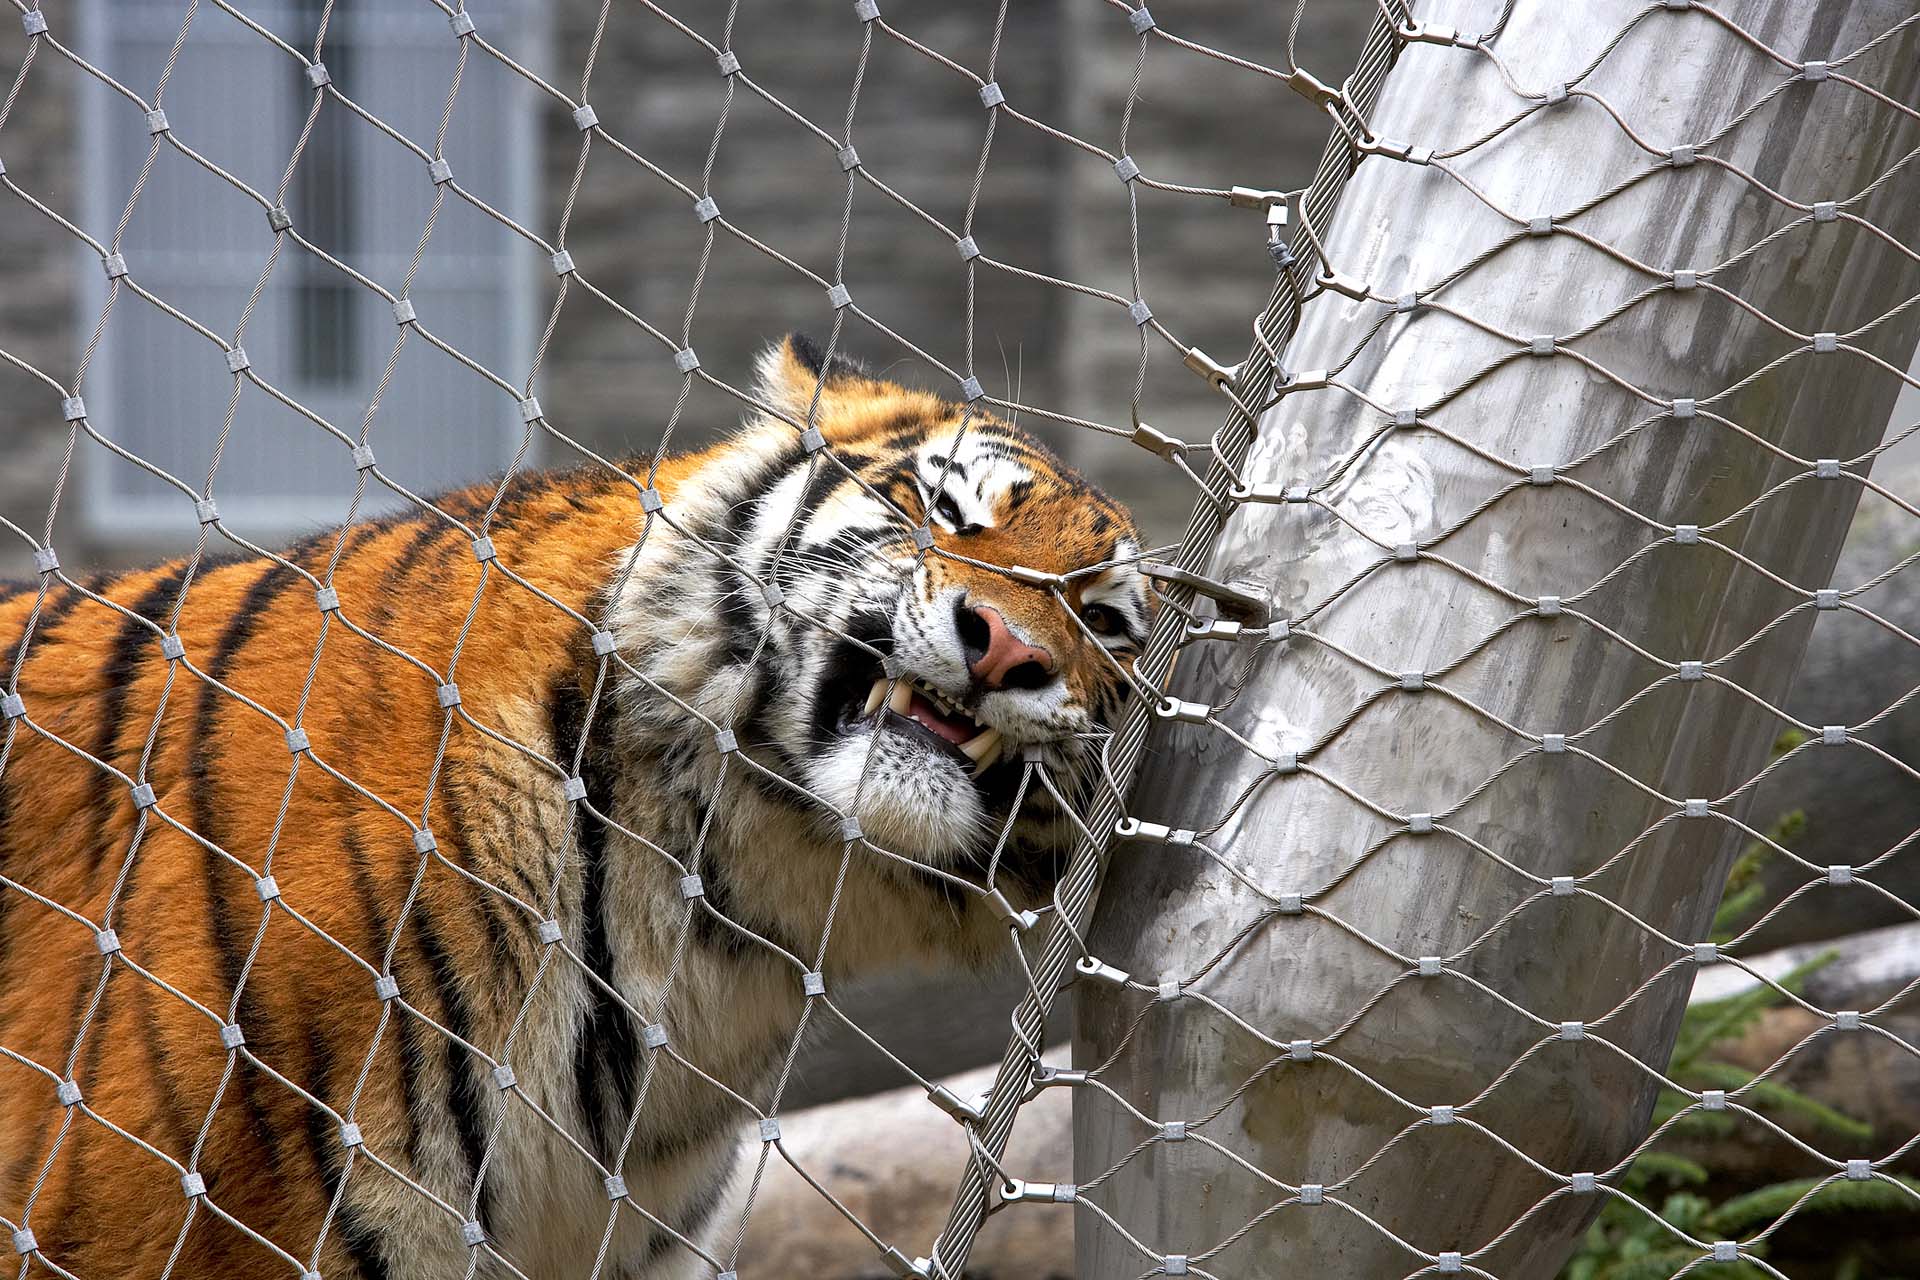 Tiger enclosure in Krakow, made of Jakob Webnet